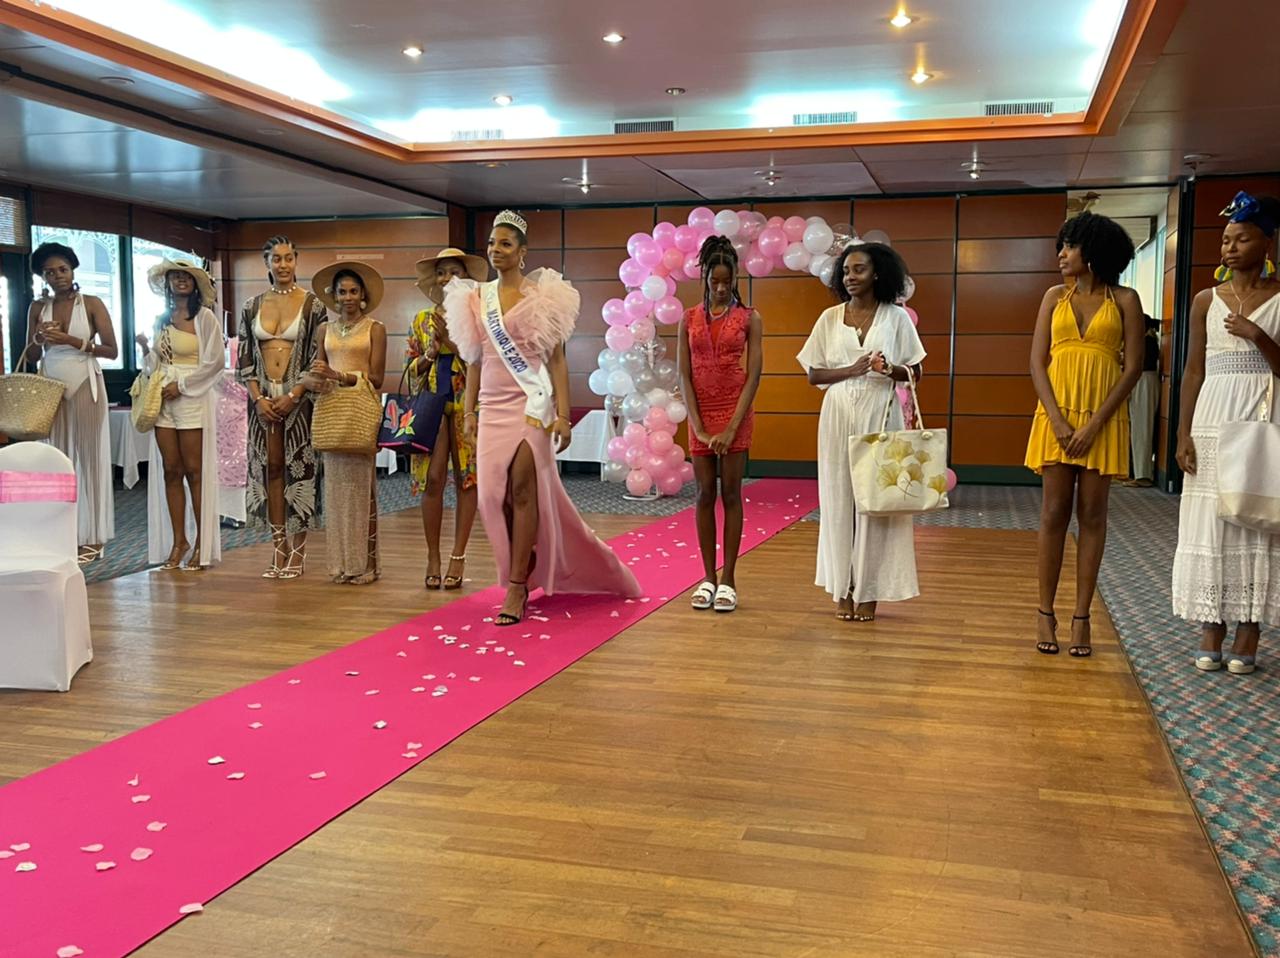     L'élection de Miss Martinique reportée à cause de la crise sanitaire

